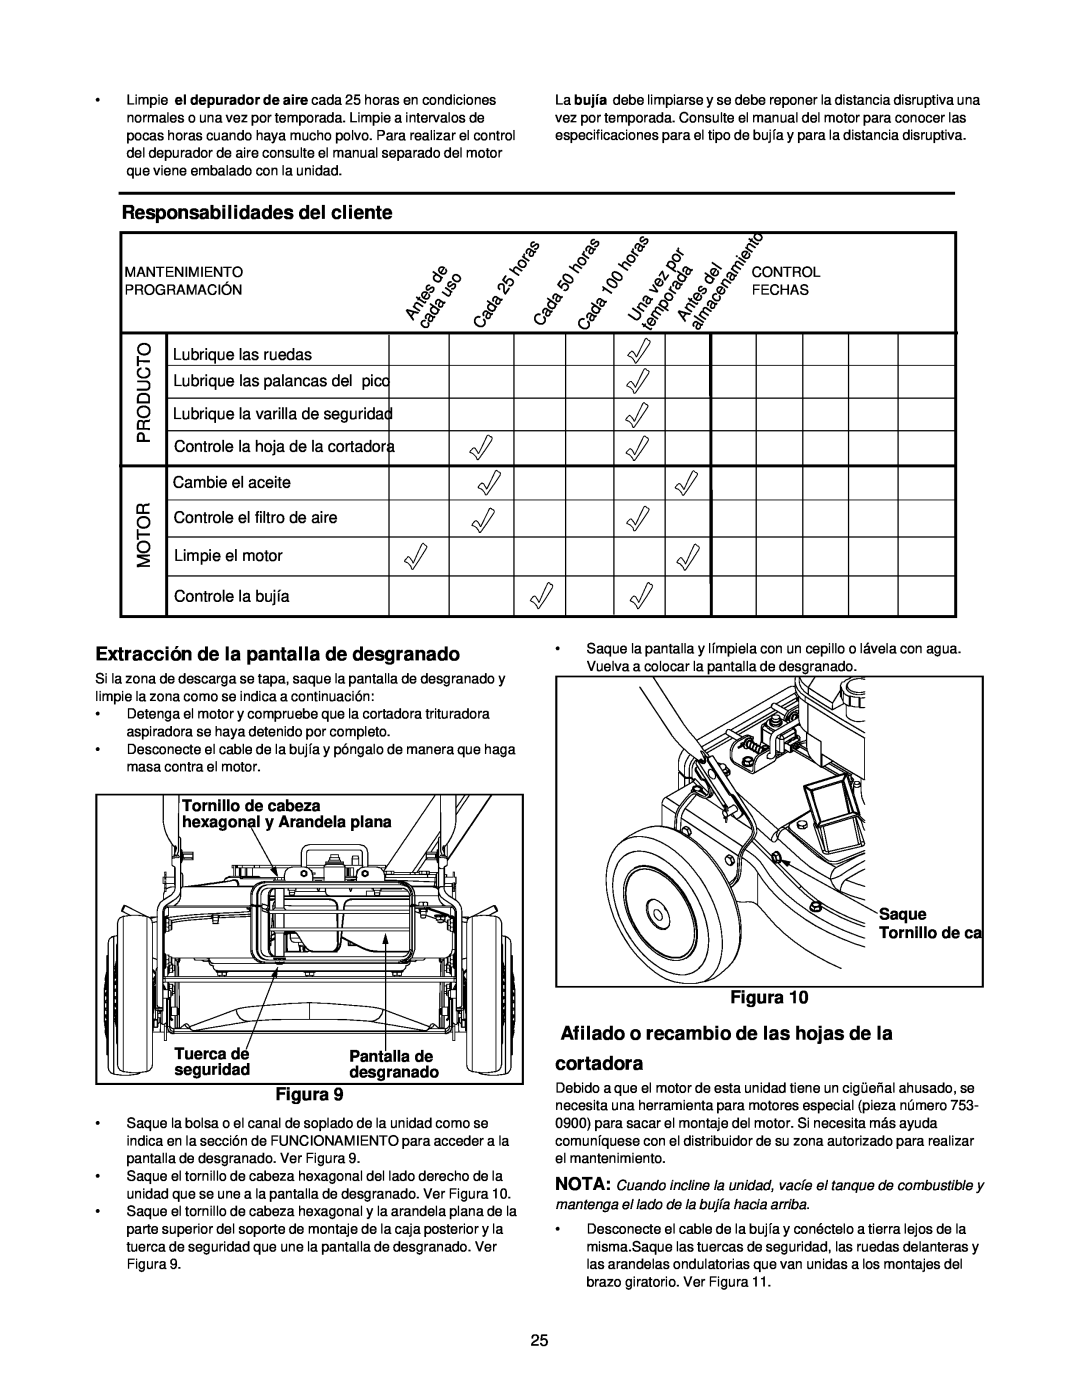 MTD 24A-020D000 manual Afilado o recambio de las hojas de la cortadora, Responsabilidades del cliente, Figura 